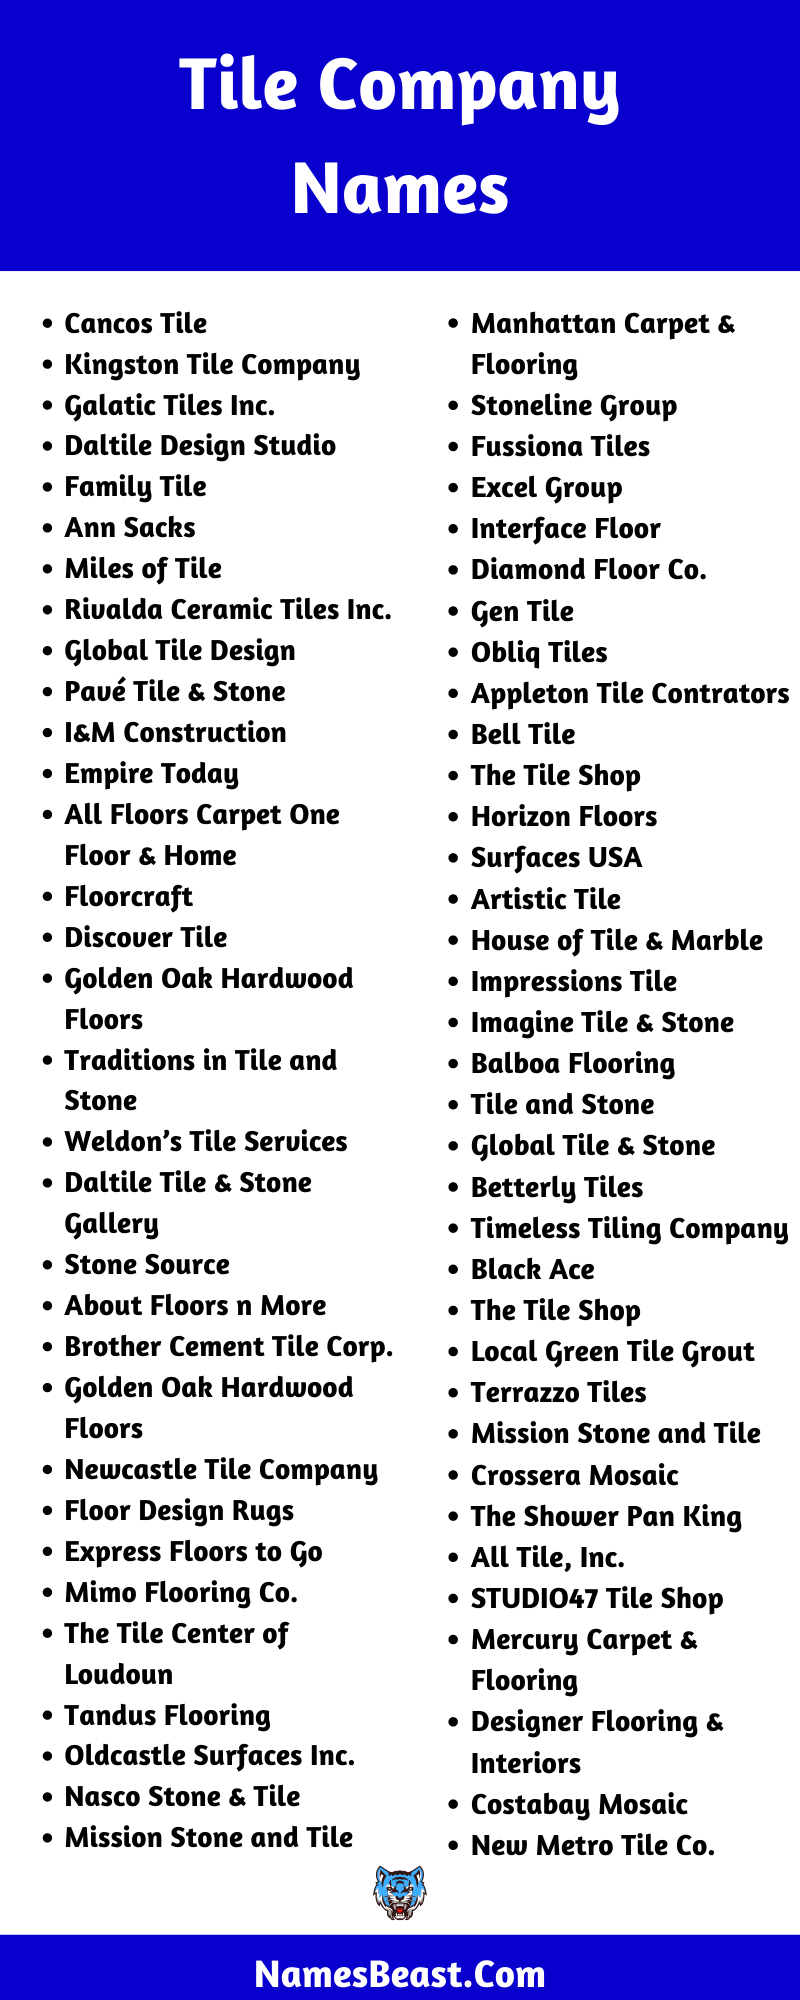 Tile Company Name Ideas